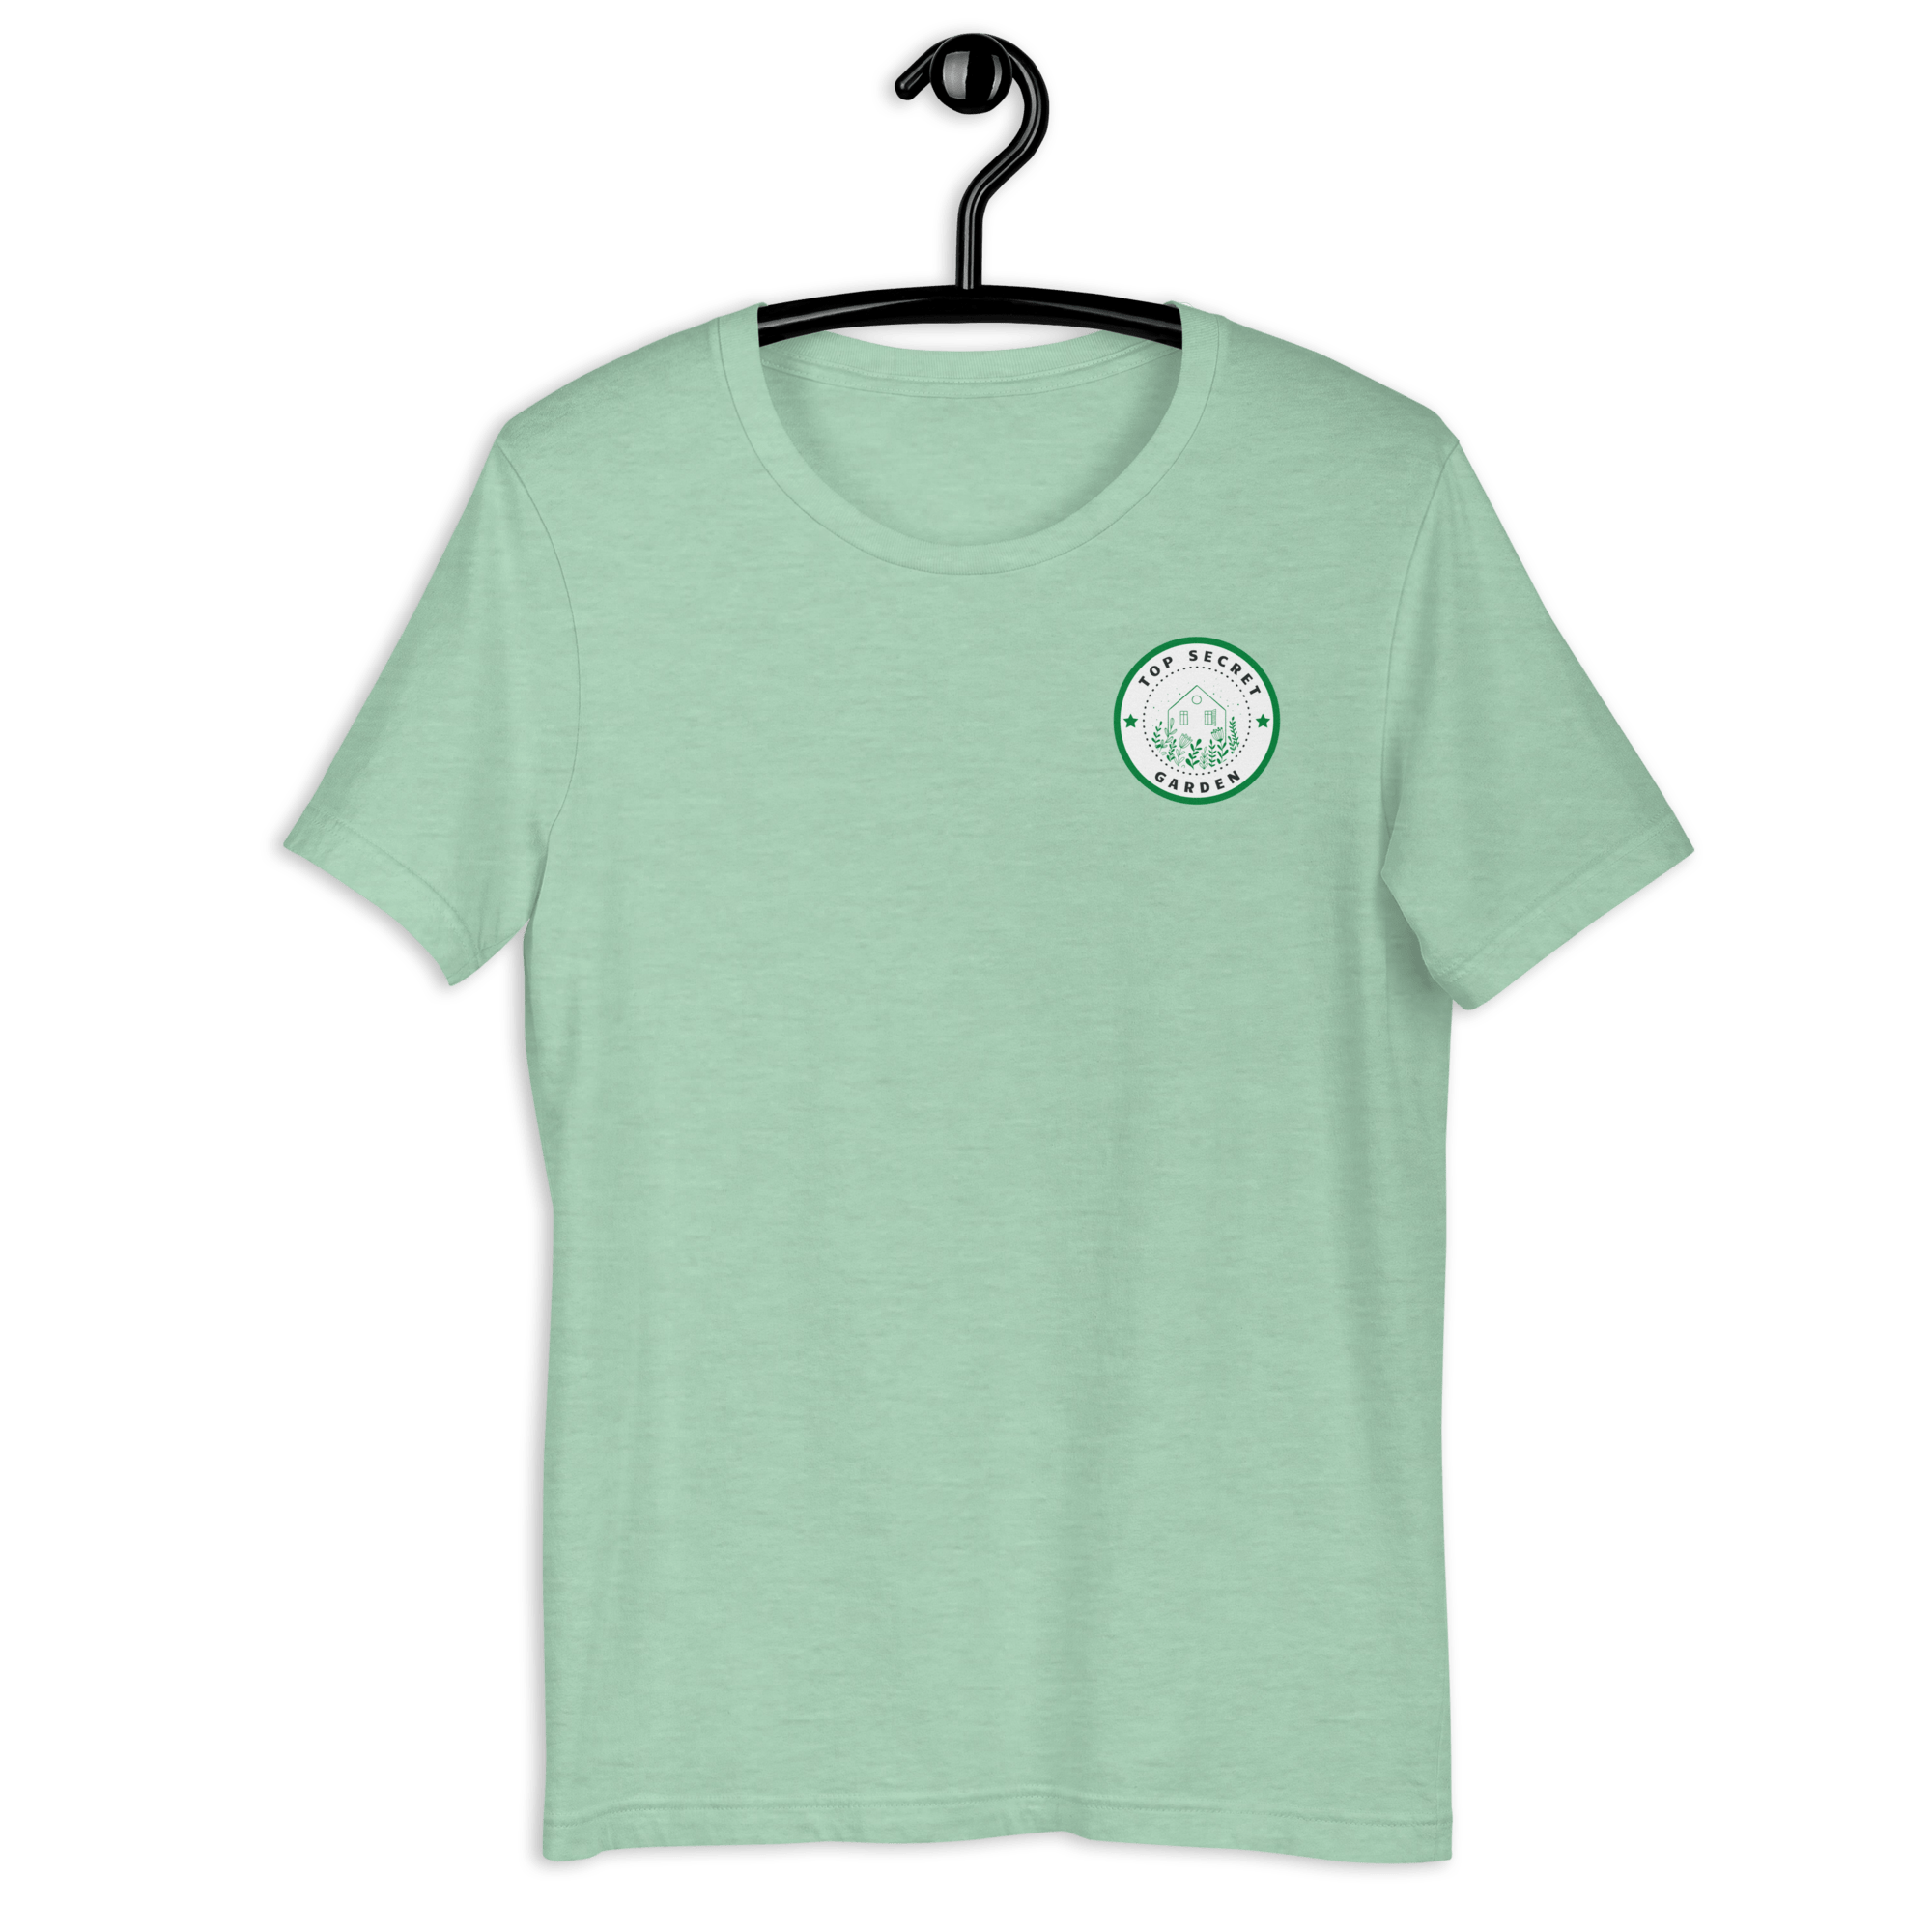 Top Secret Garden T-shirt Heather Prism Mint / S Shirts & Tops Jolly & Goode